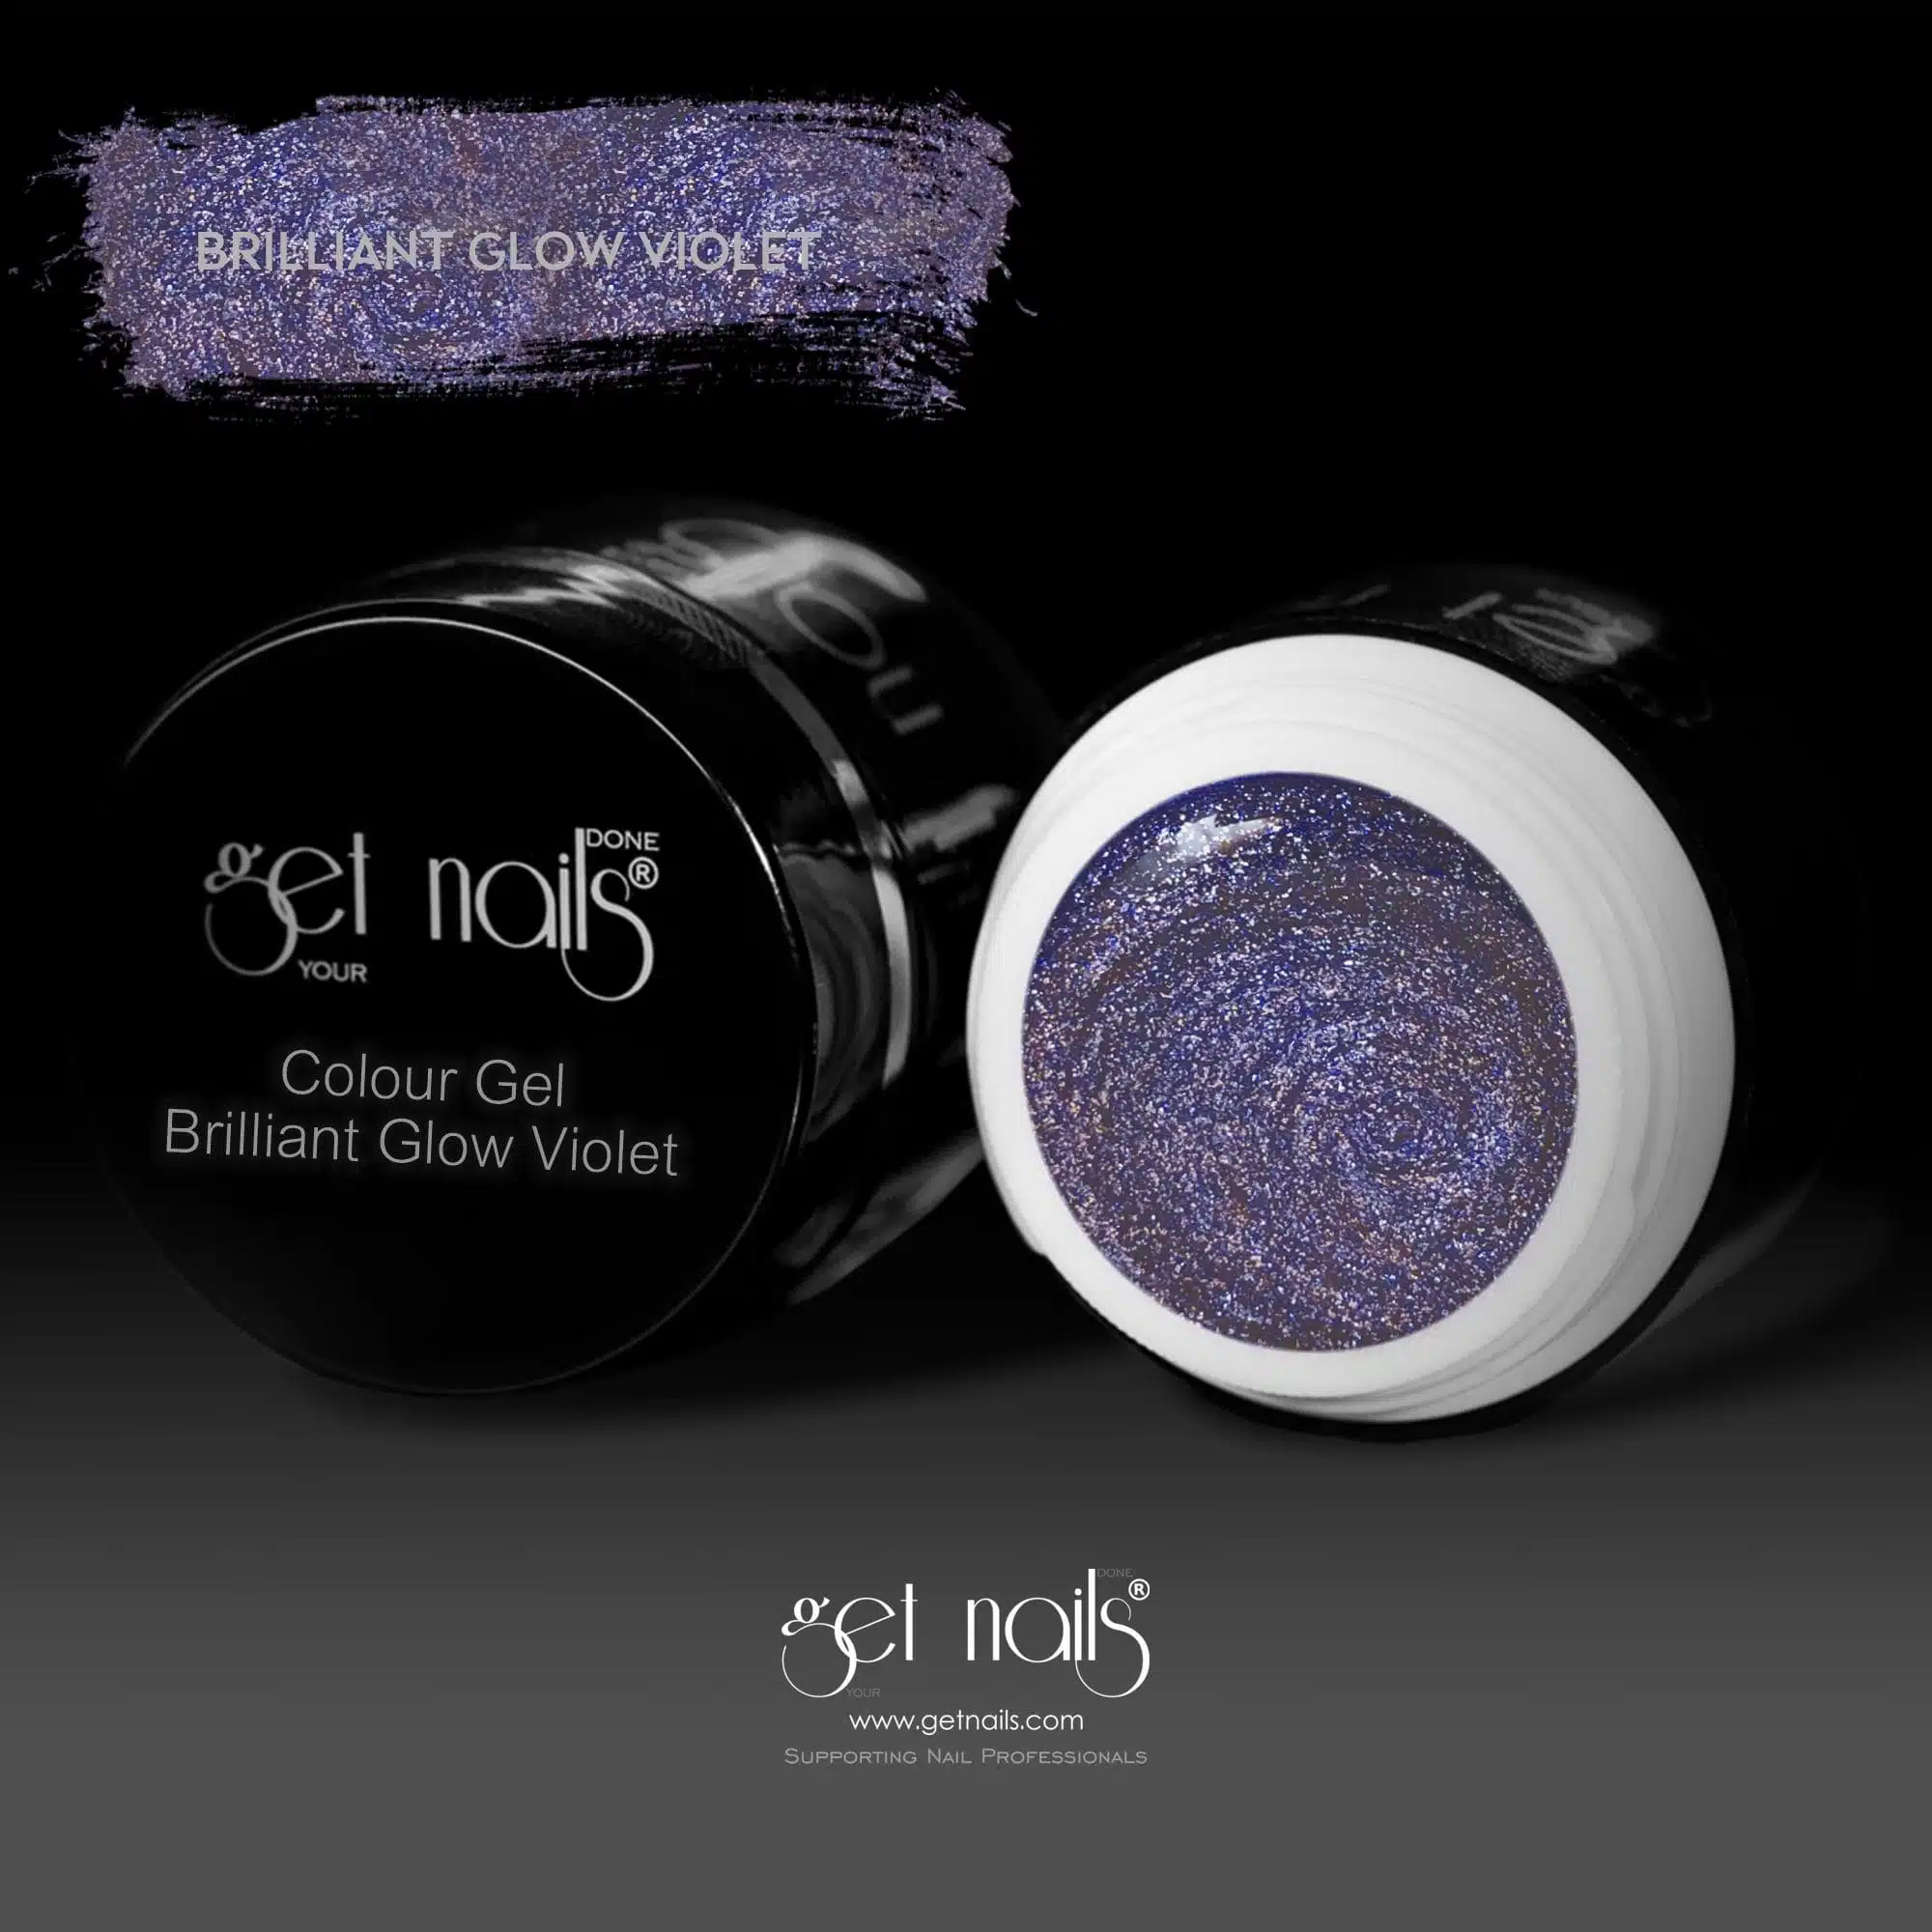 Get Nails Austria - Colour Gel Brilliant Glow Violet 5g